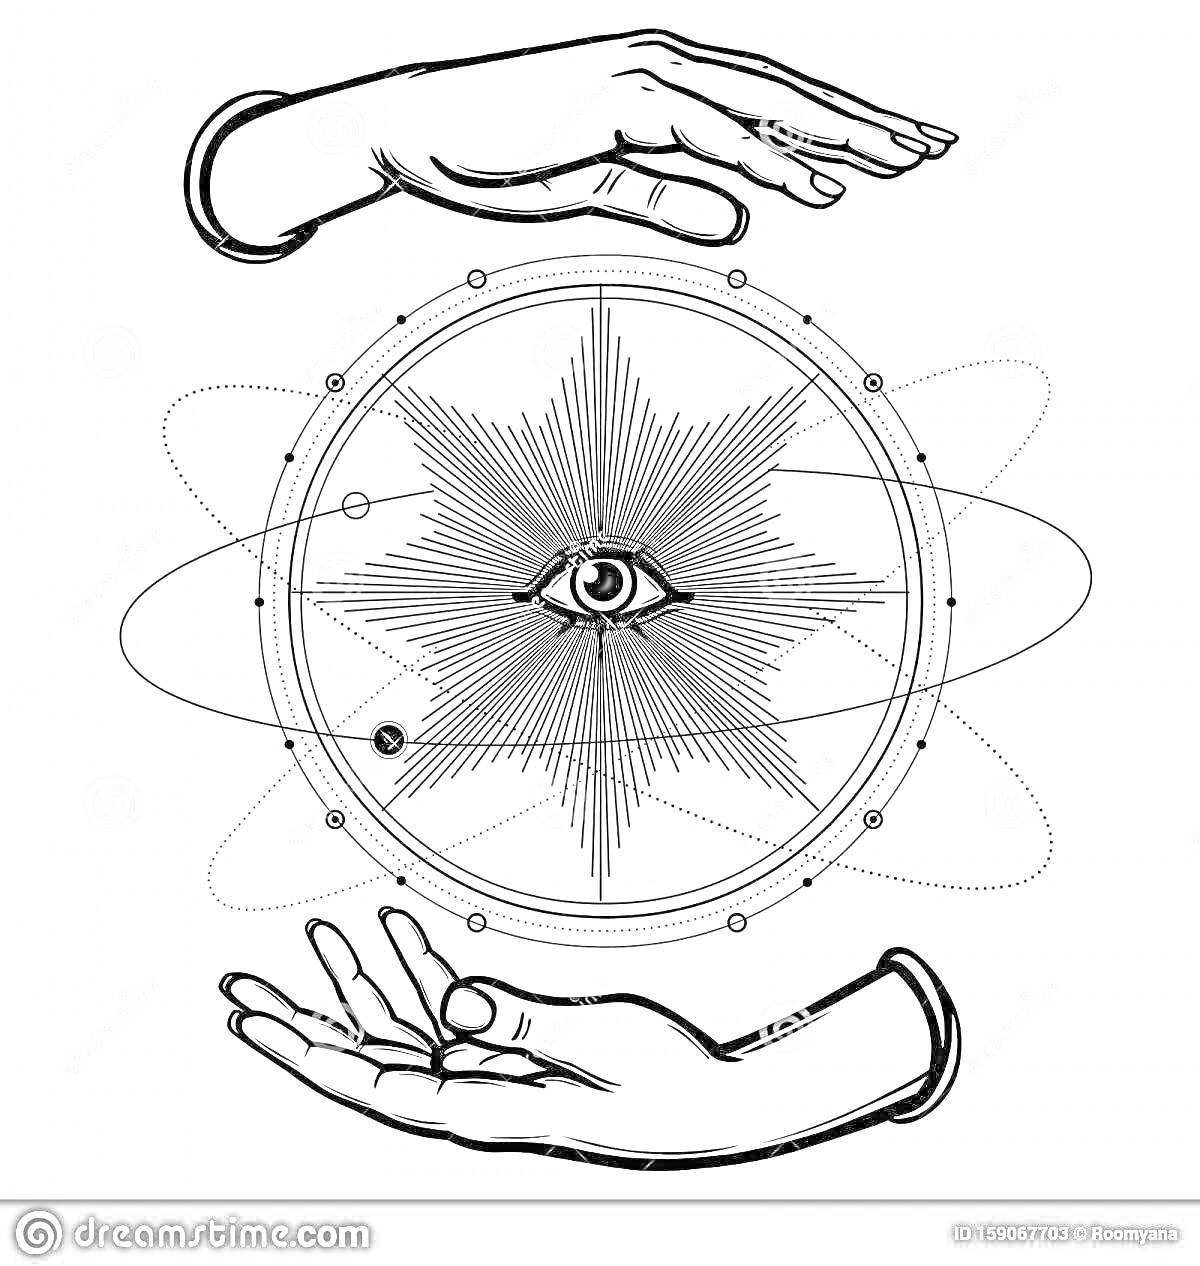 Раскраска Руки, окружающие звезду с глазом, окружённую орбитами частиц